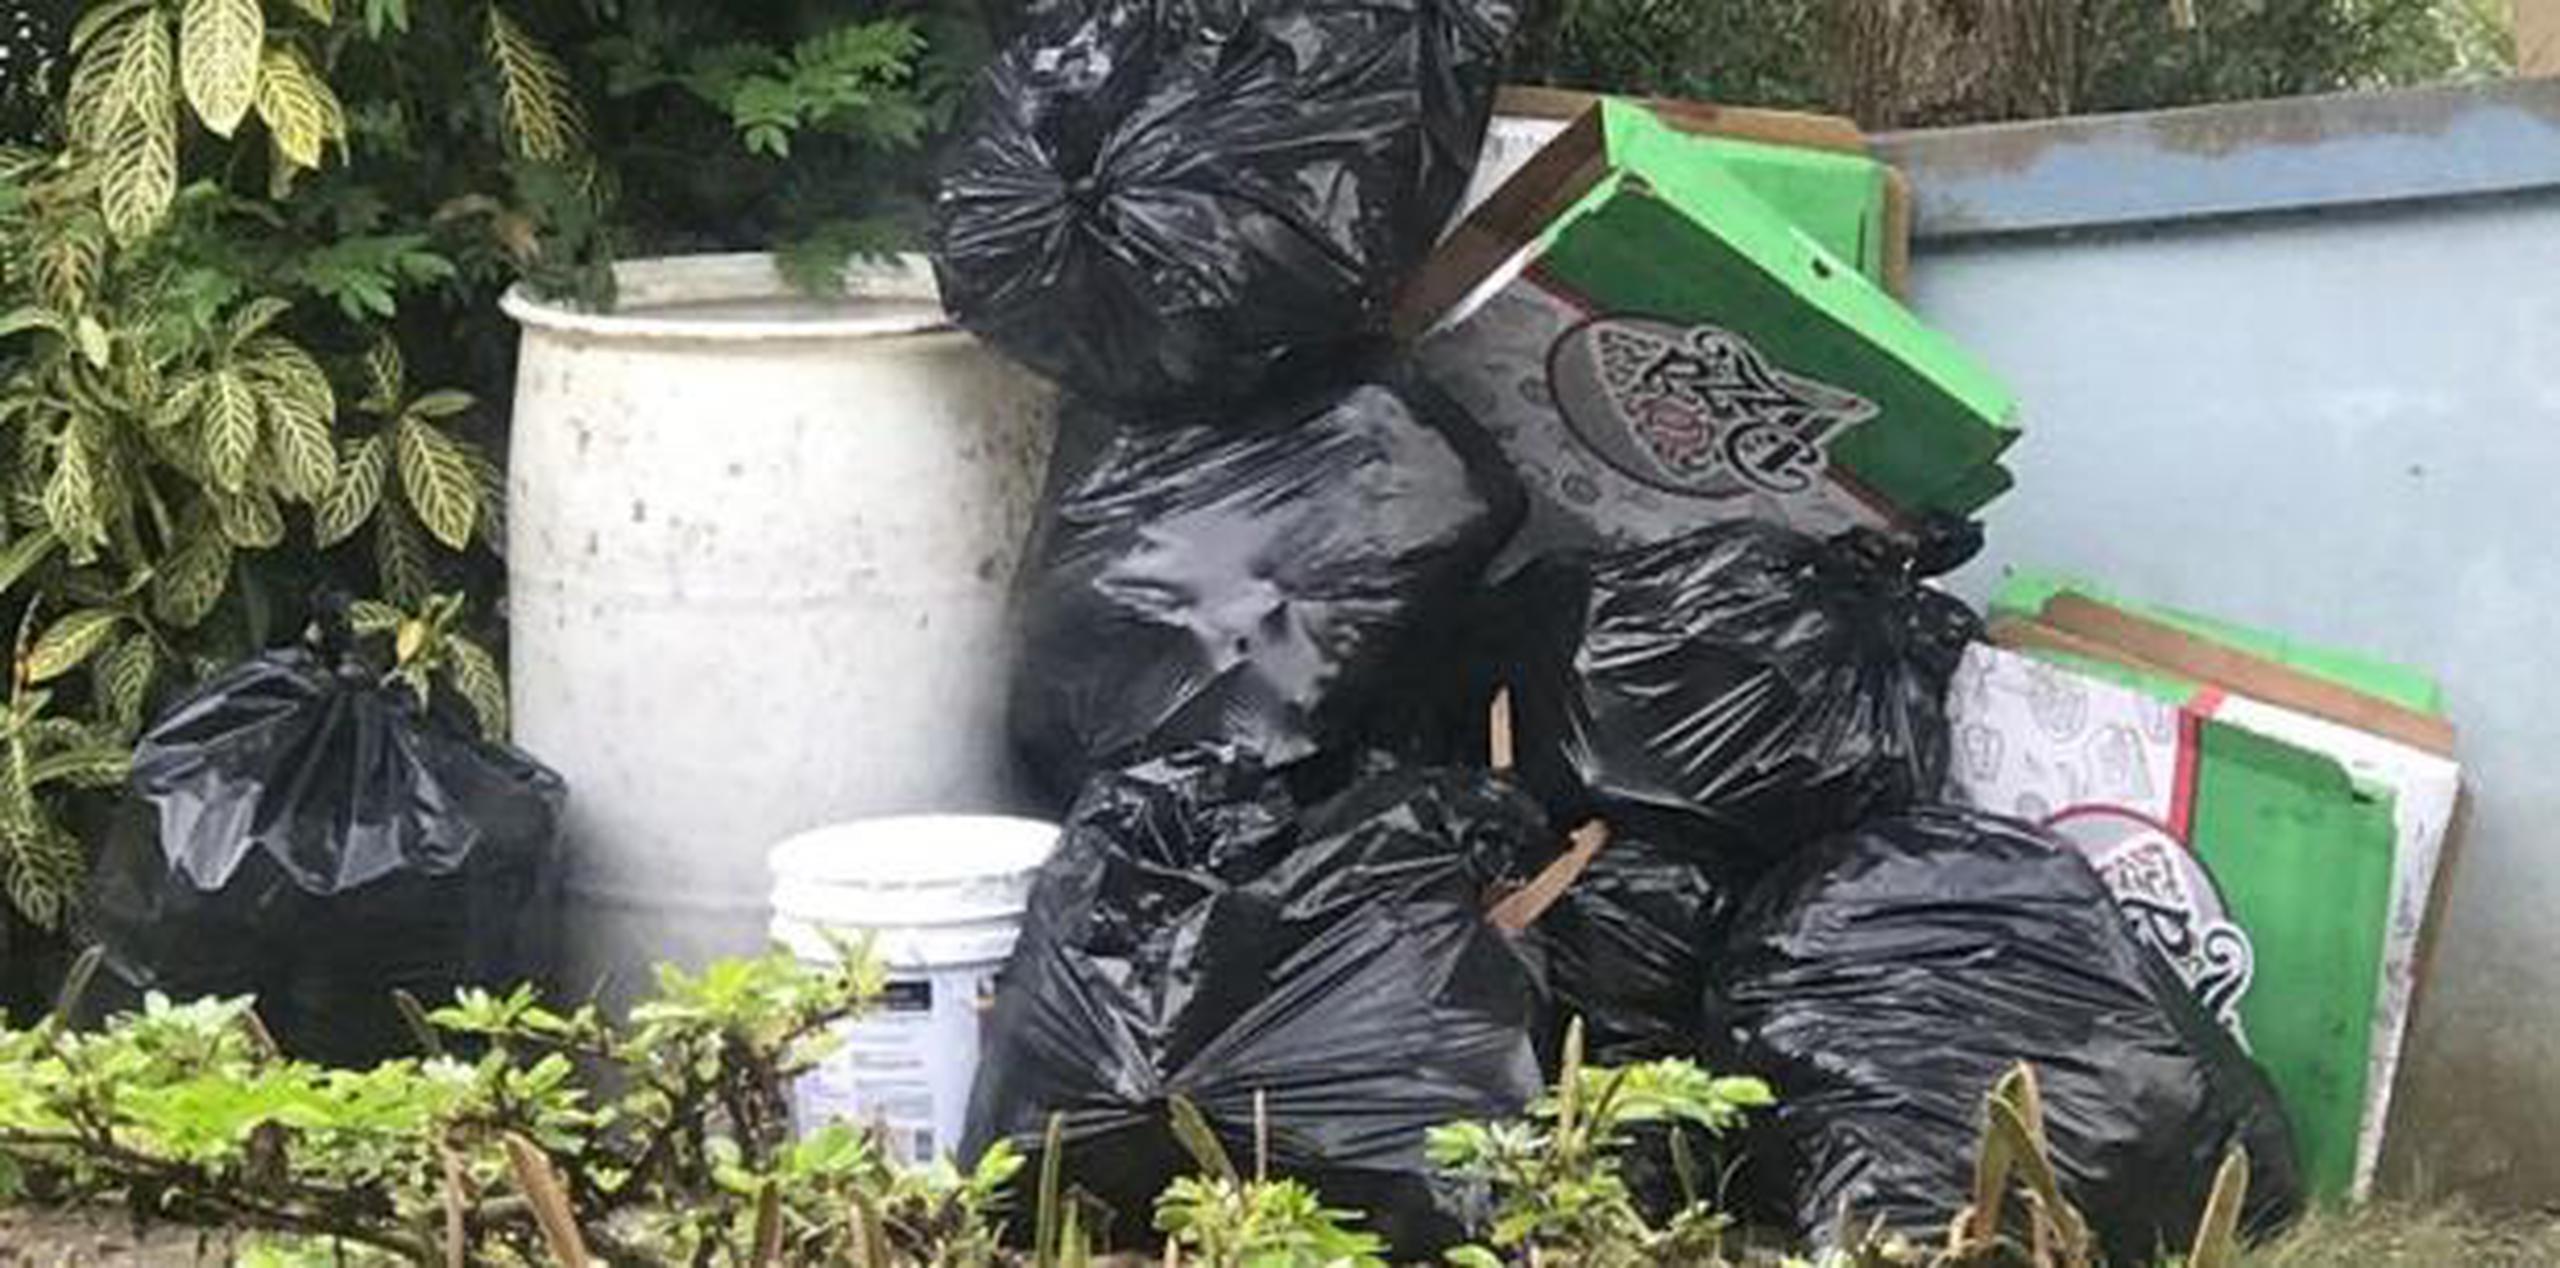 Residentes han experimentado retrasos de más de tres semanas en el servicio de recogido de basura, según Tomás Alvarado Colón. (Suministrada)